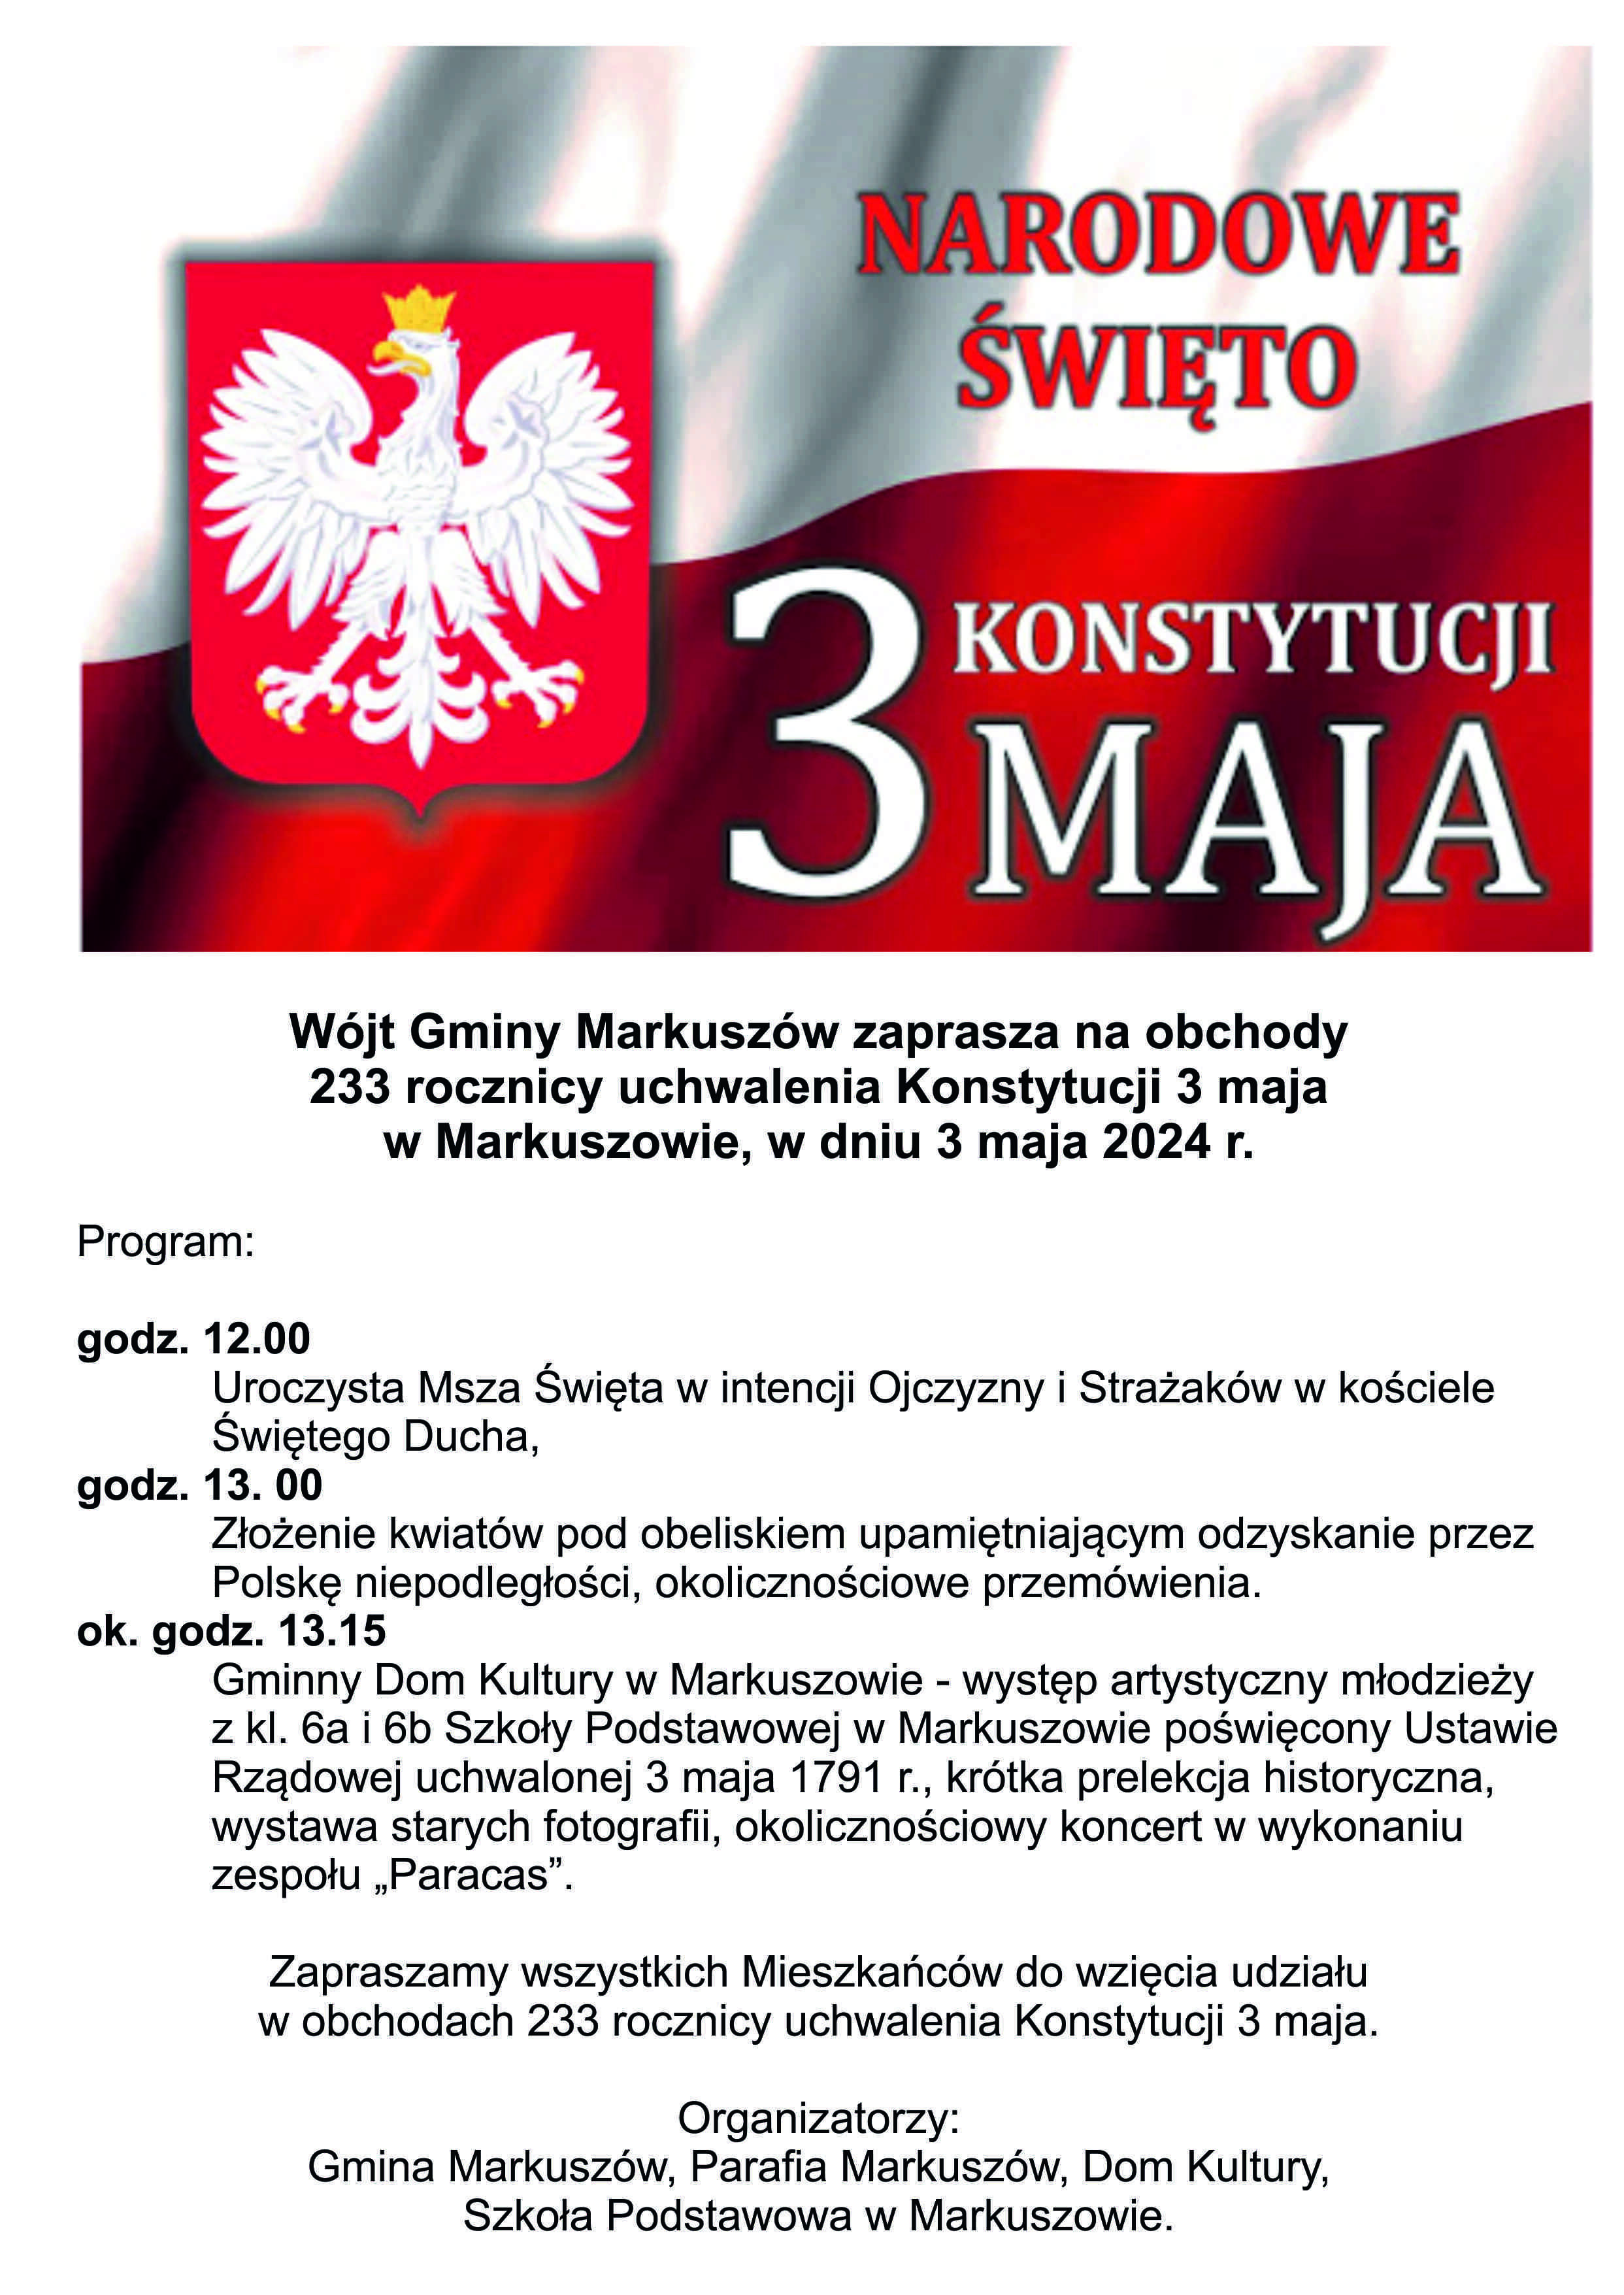 Zdjęcie przedstawia plakat wydarzenia o nazwie "Narodowe Święto Konstytucji 3 Maja" w Markuszowiu z programem obchodów, zawierającym m.in. mszę, występy artystyczne, konferencję oraz koncert.